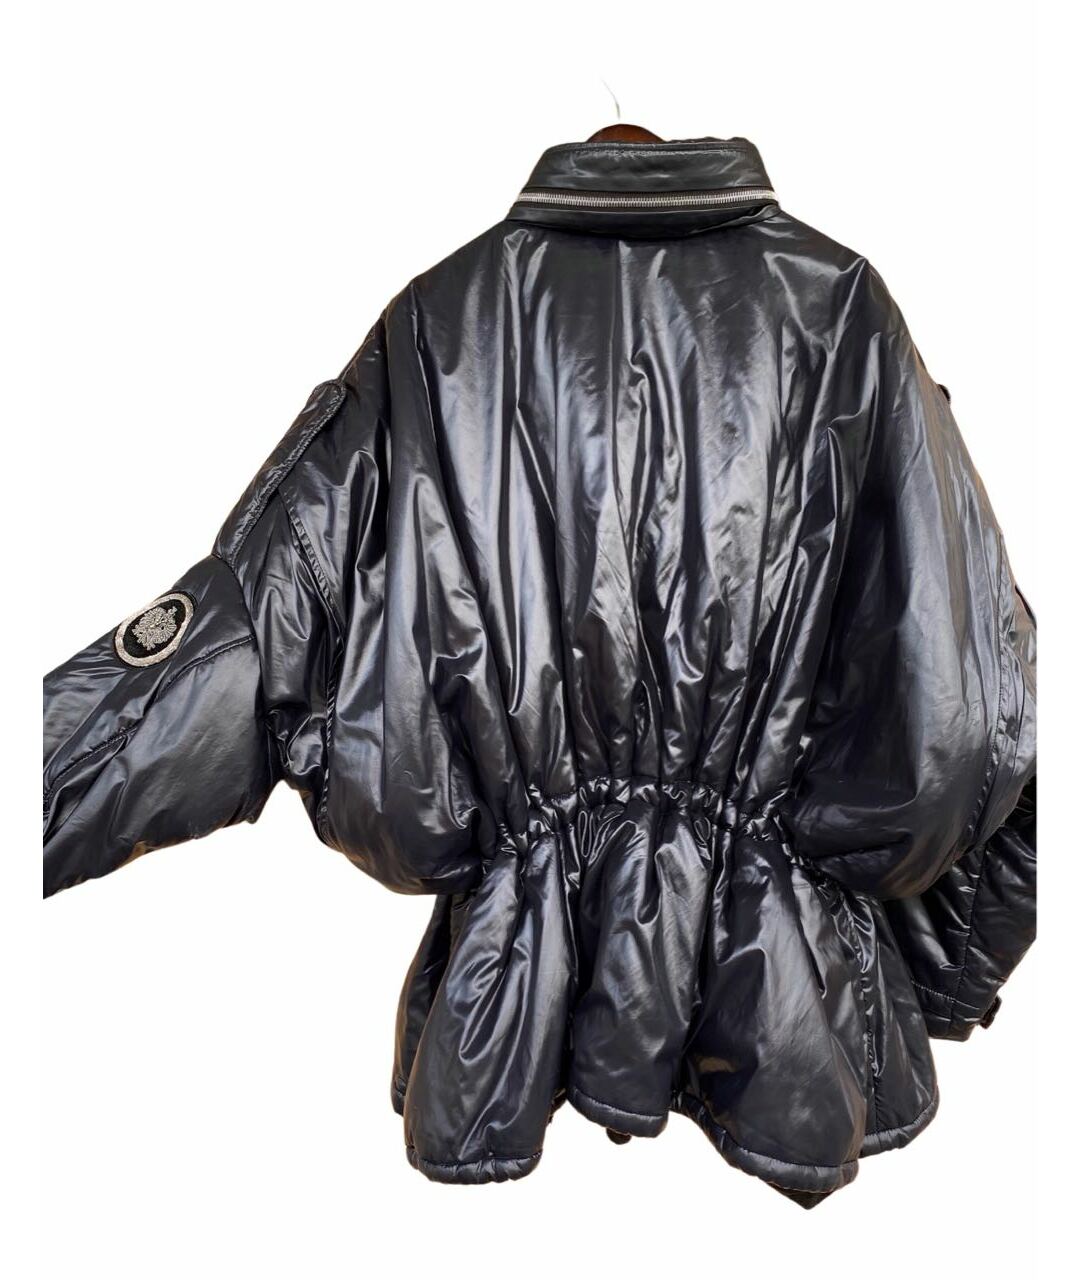 IRFE Черная полиамидовая куртка, фото 2